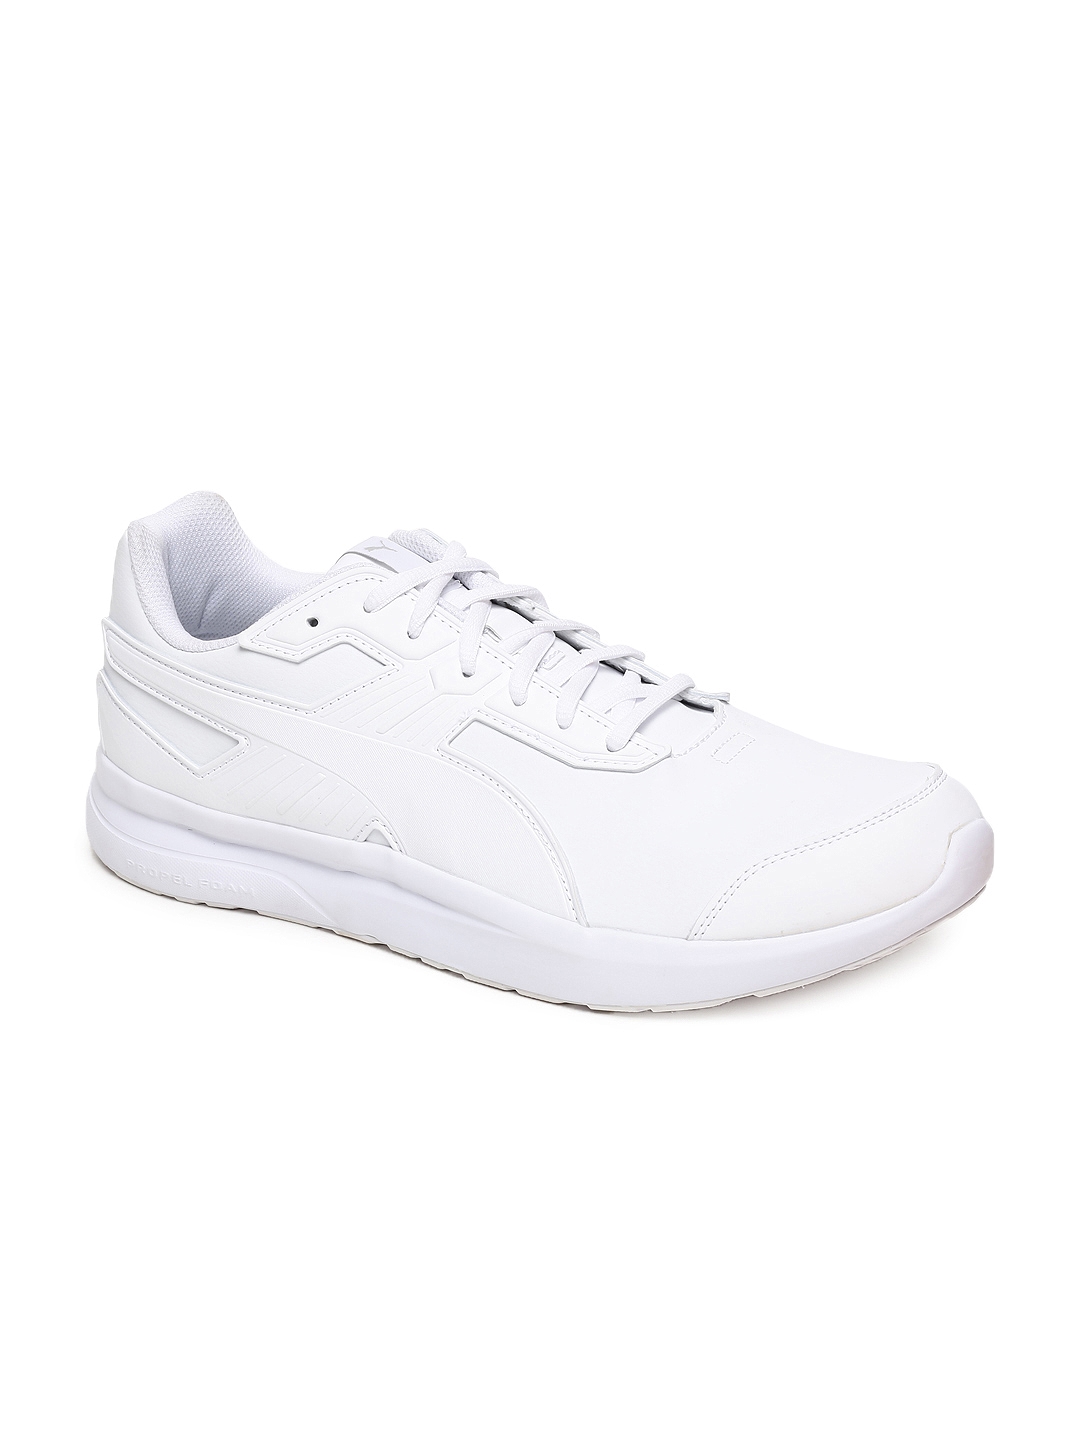 Buy Puma Men White Escaper SL Sneakers 